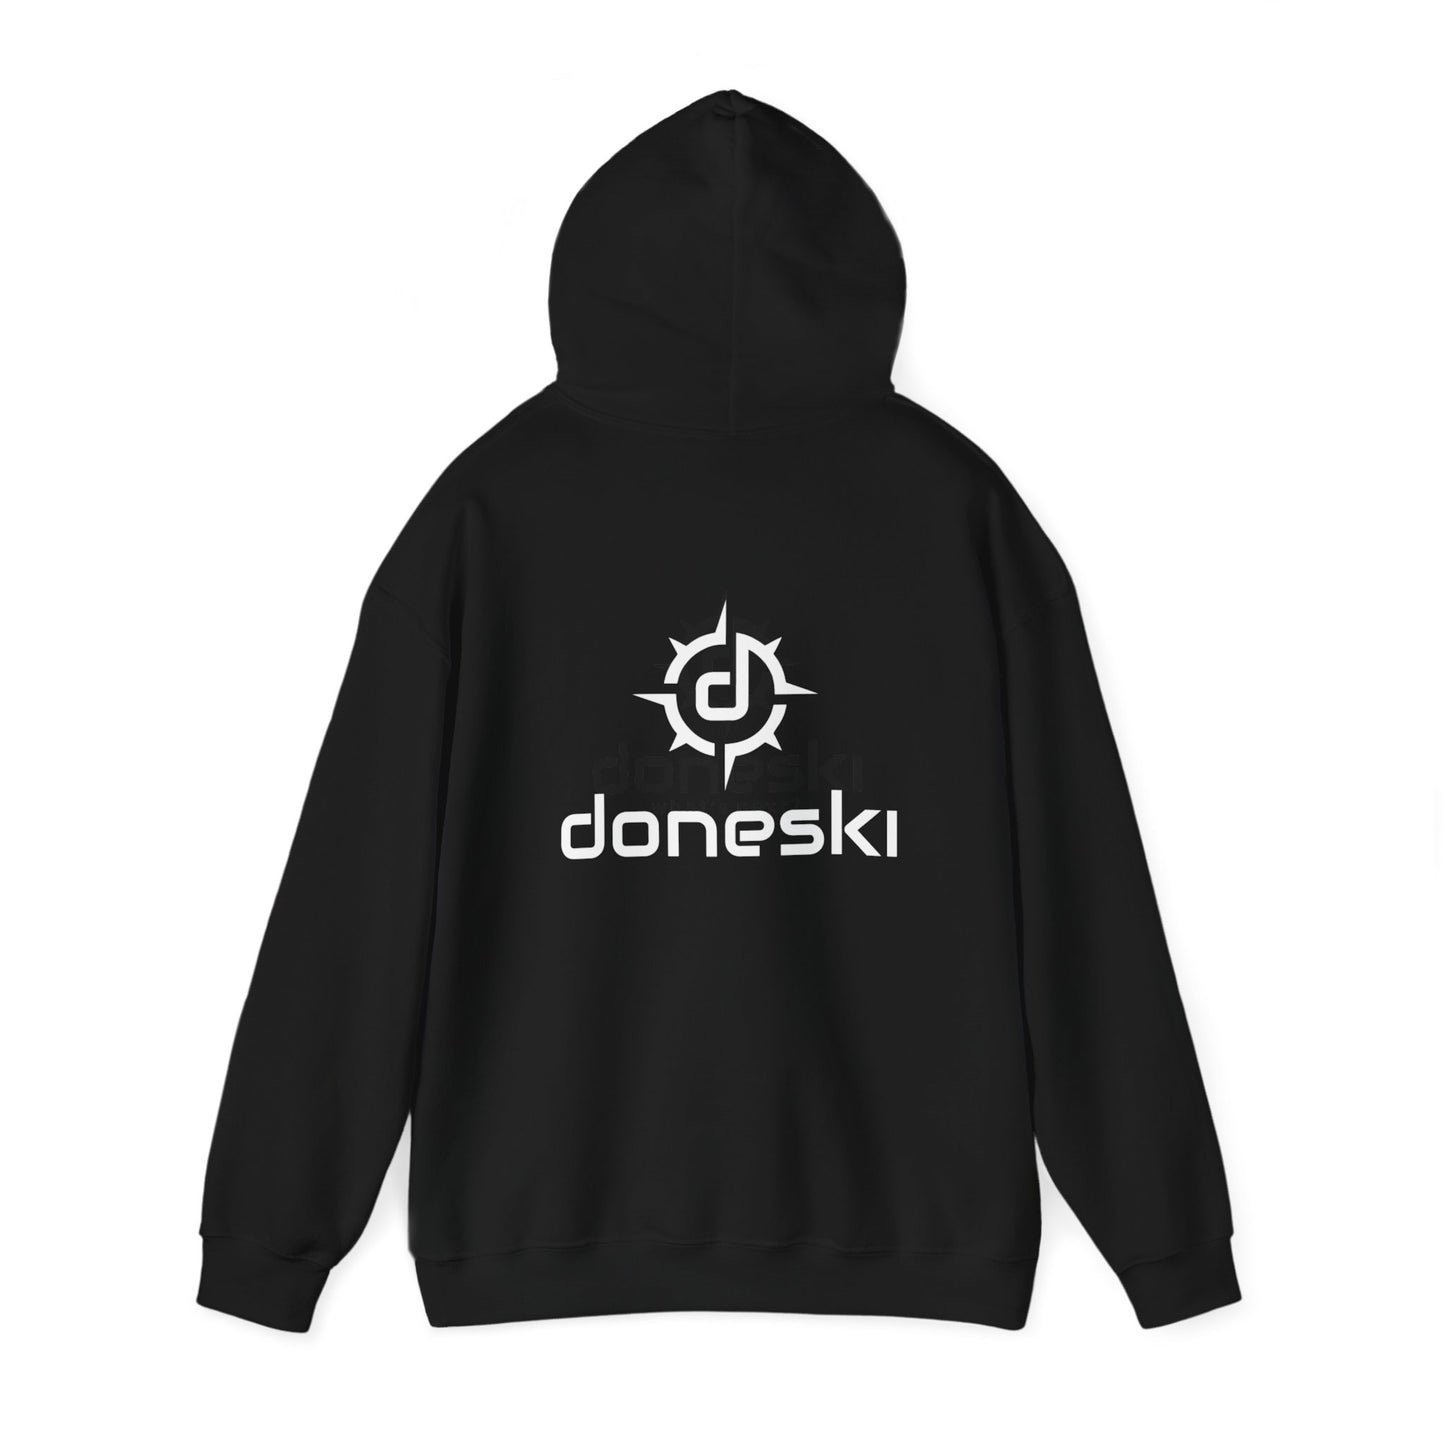 Doneski™ Front/Back Logo Unisex Hooded Sweatshirt